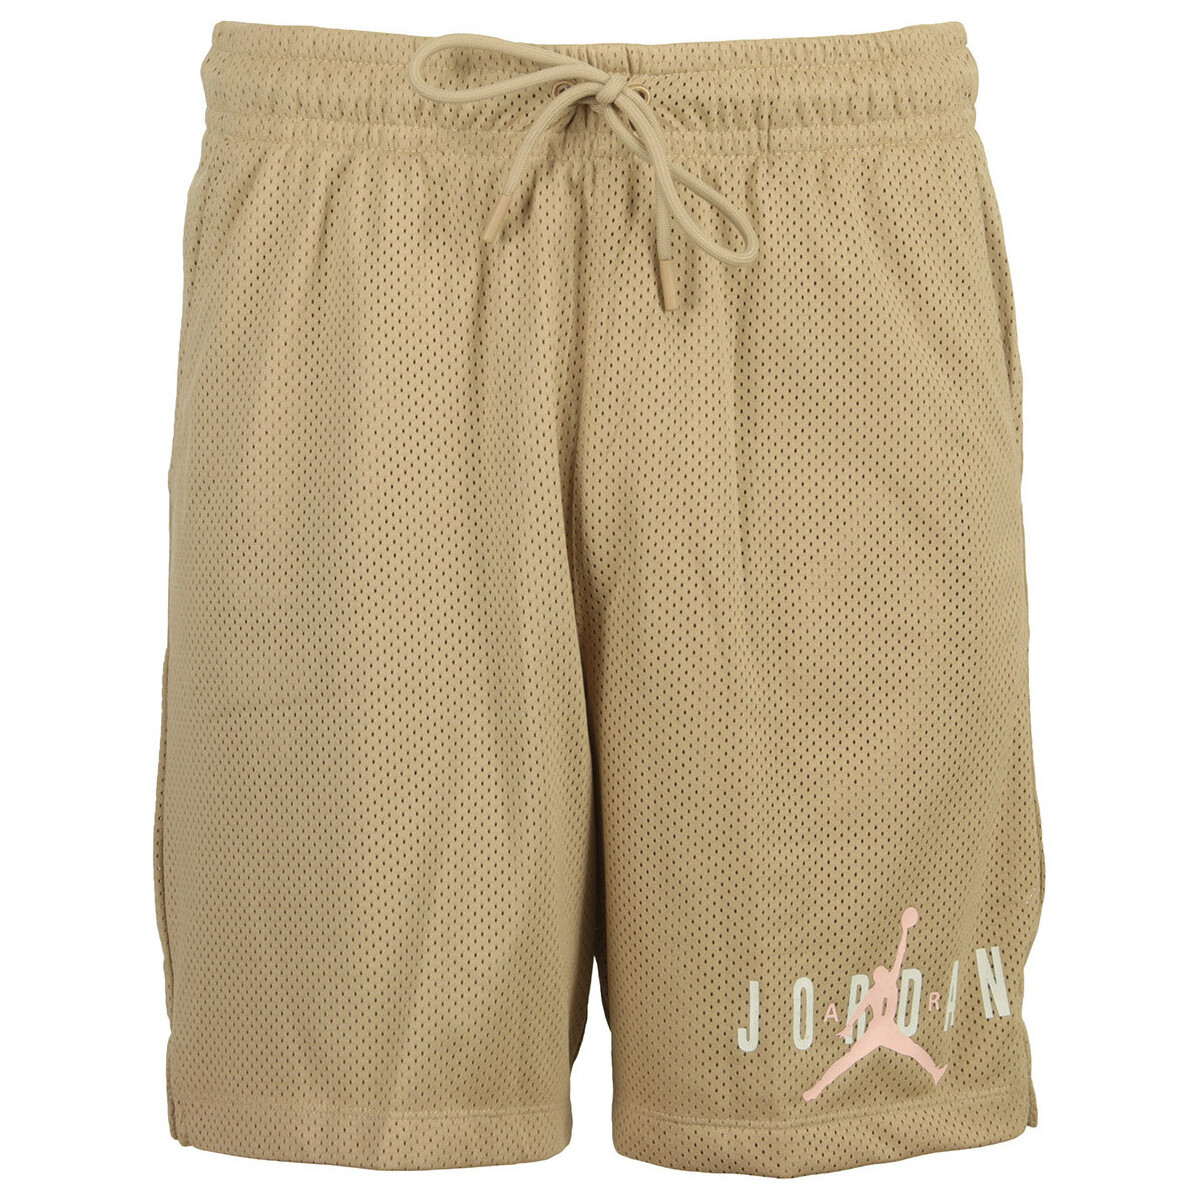 Kleidung Herren Shorts / Bermudas Nike M J Ess Mesh Gfx Short Beige